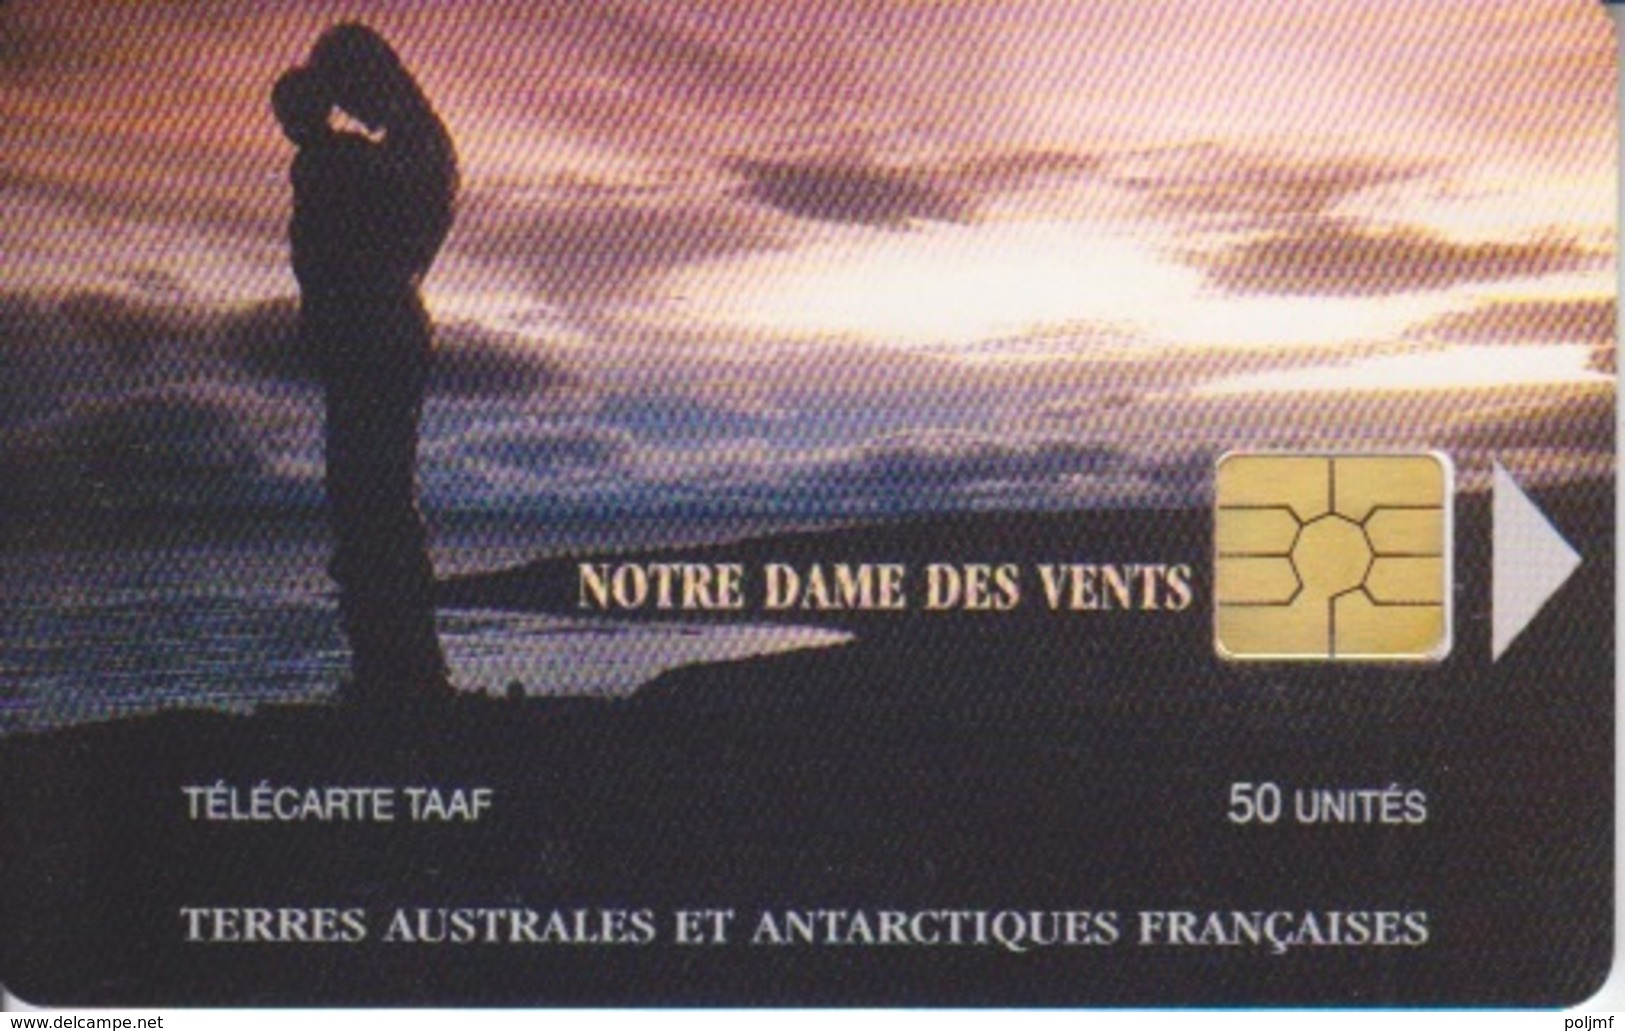 Télécarte 50U, Tirage 1500, Notre Dame Du Vent (Logo Au Coin Opposé) - TAAF - Terres Australes Antarctiques Françaises